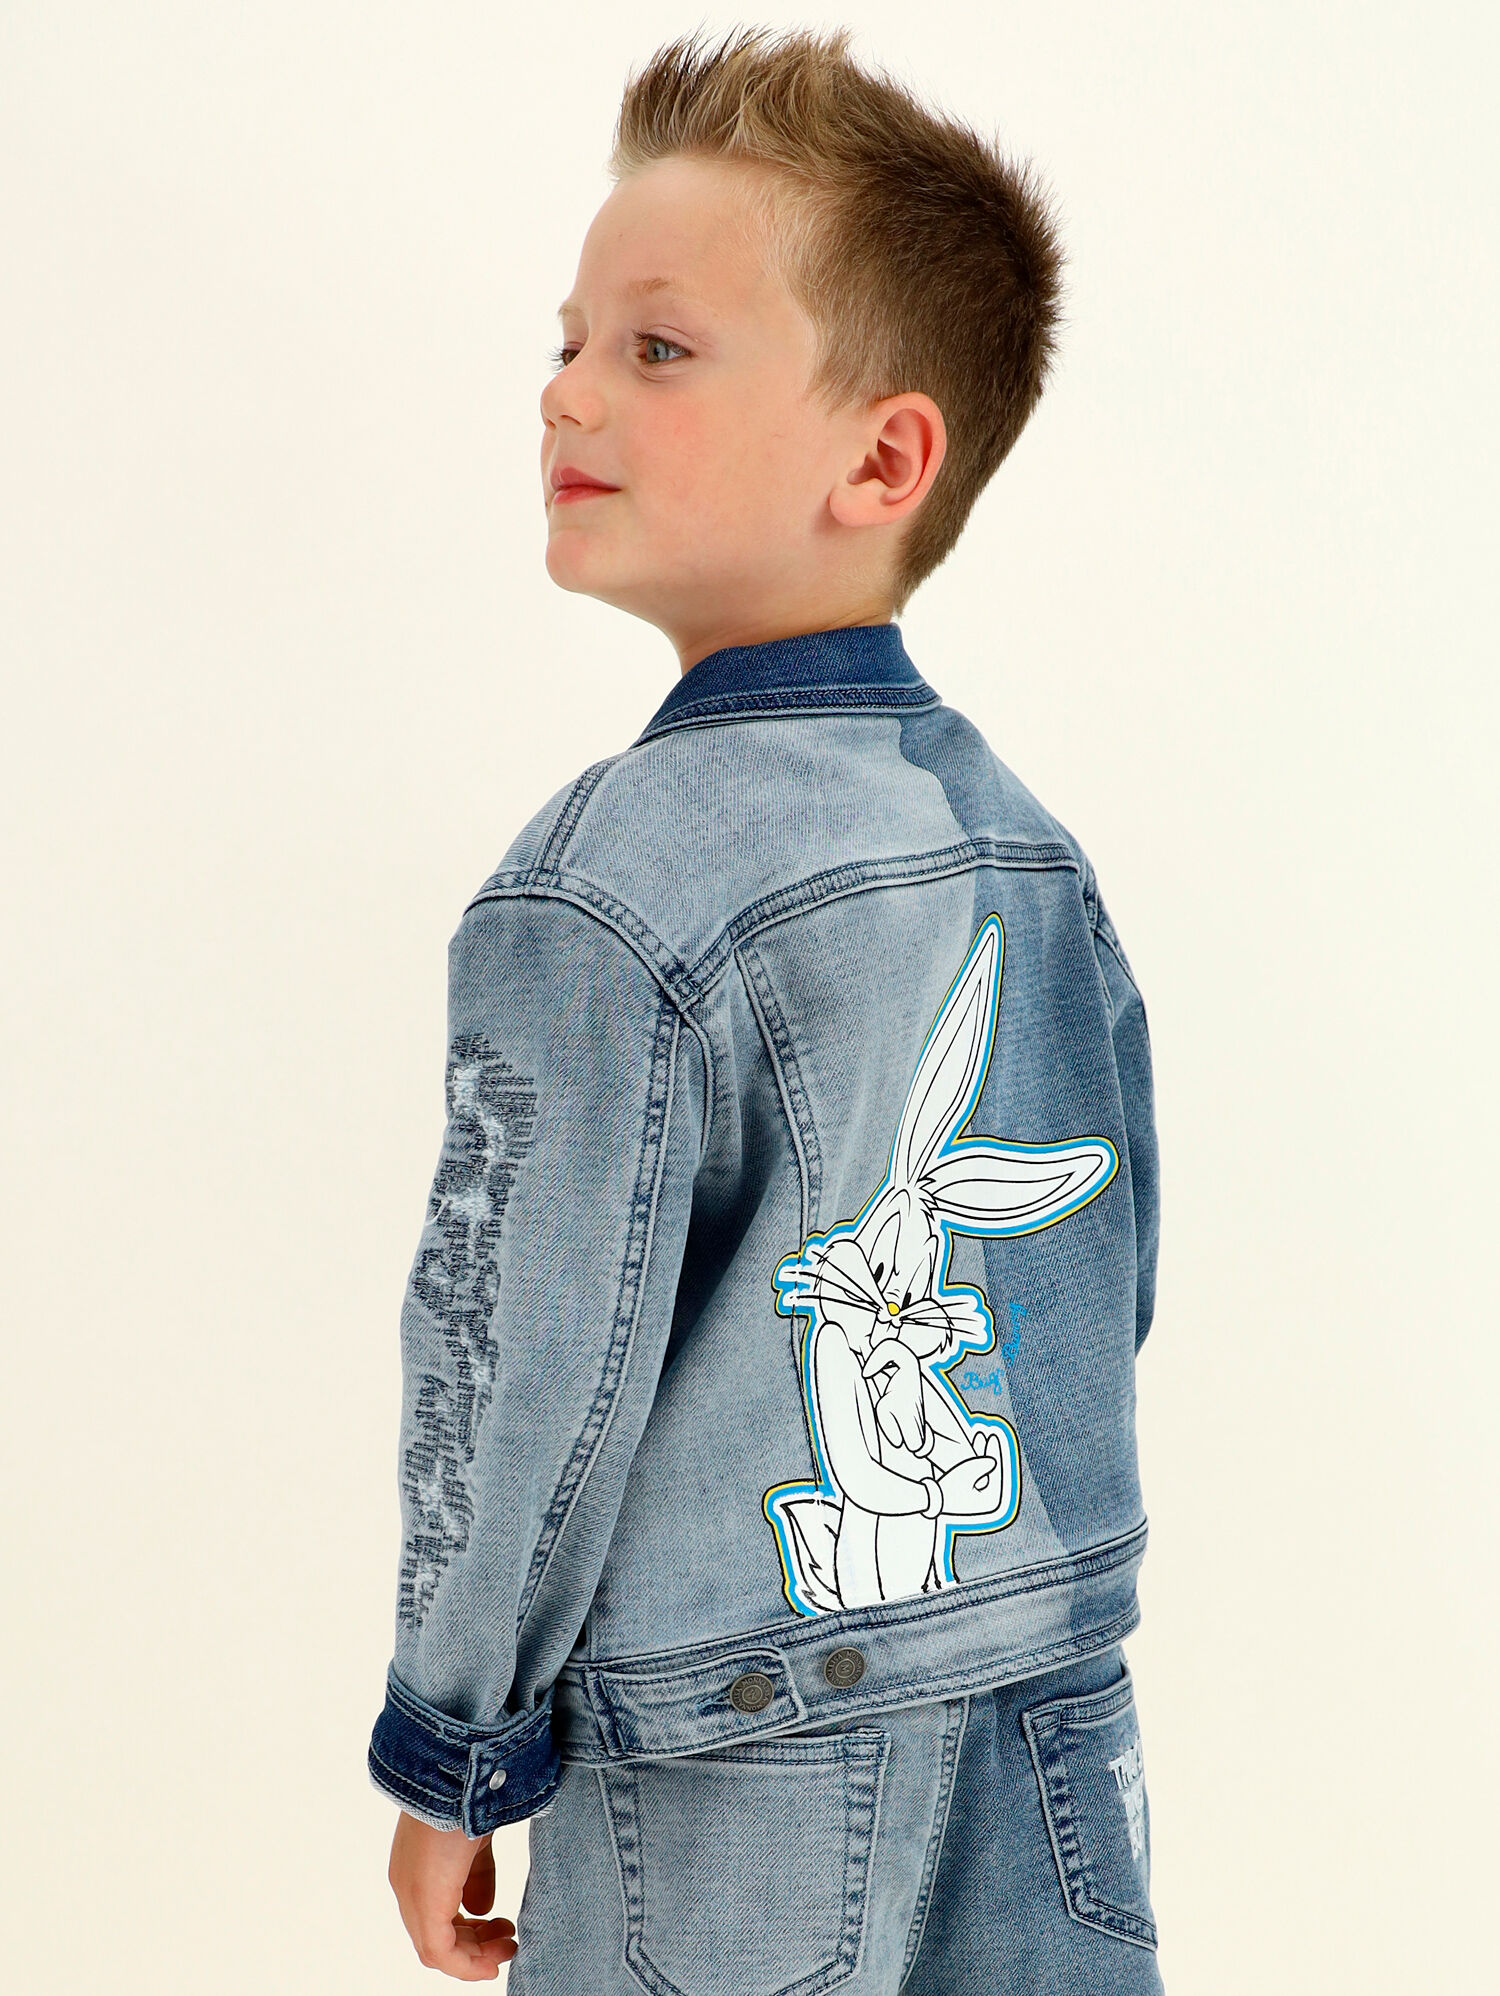 Giacca jeans patch Bugs Bunny Monnalisa Bambino Abbigliamento Cappotti e giubbotti Giacche Giacche di jeans 